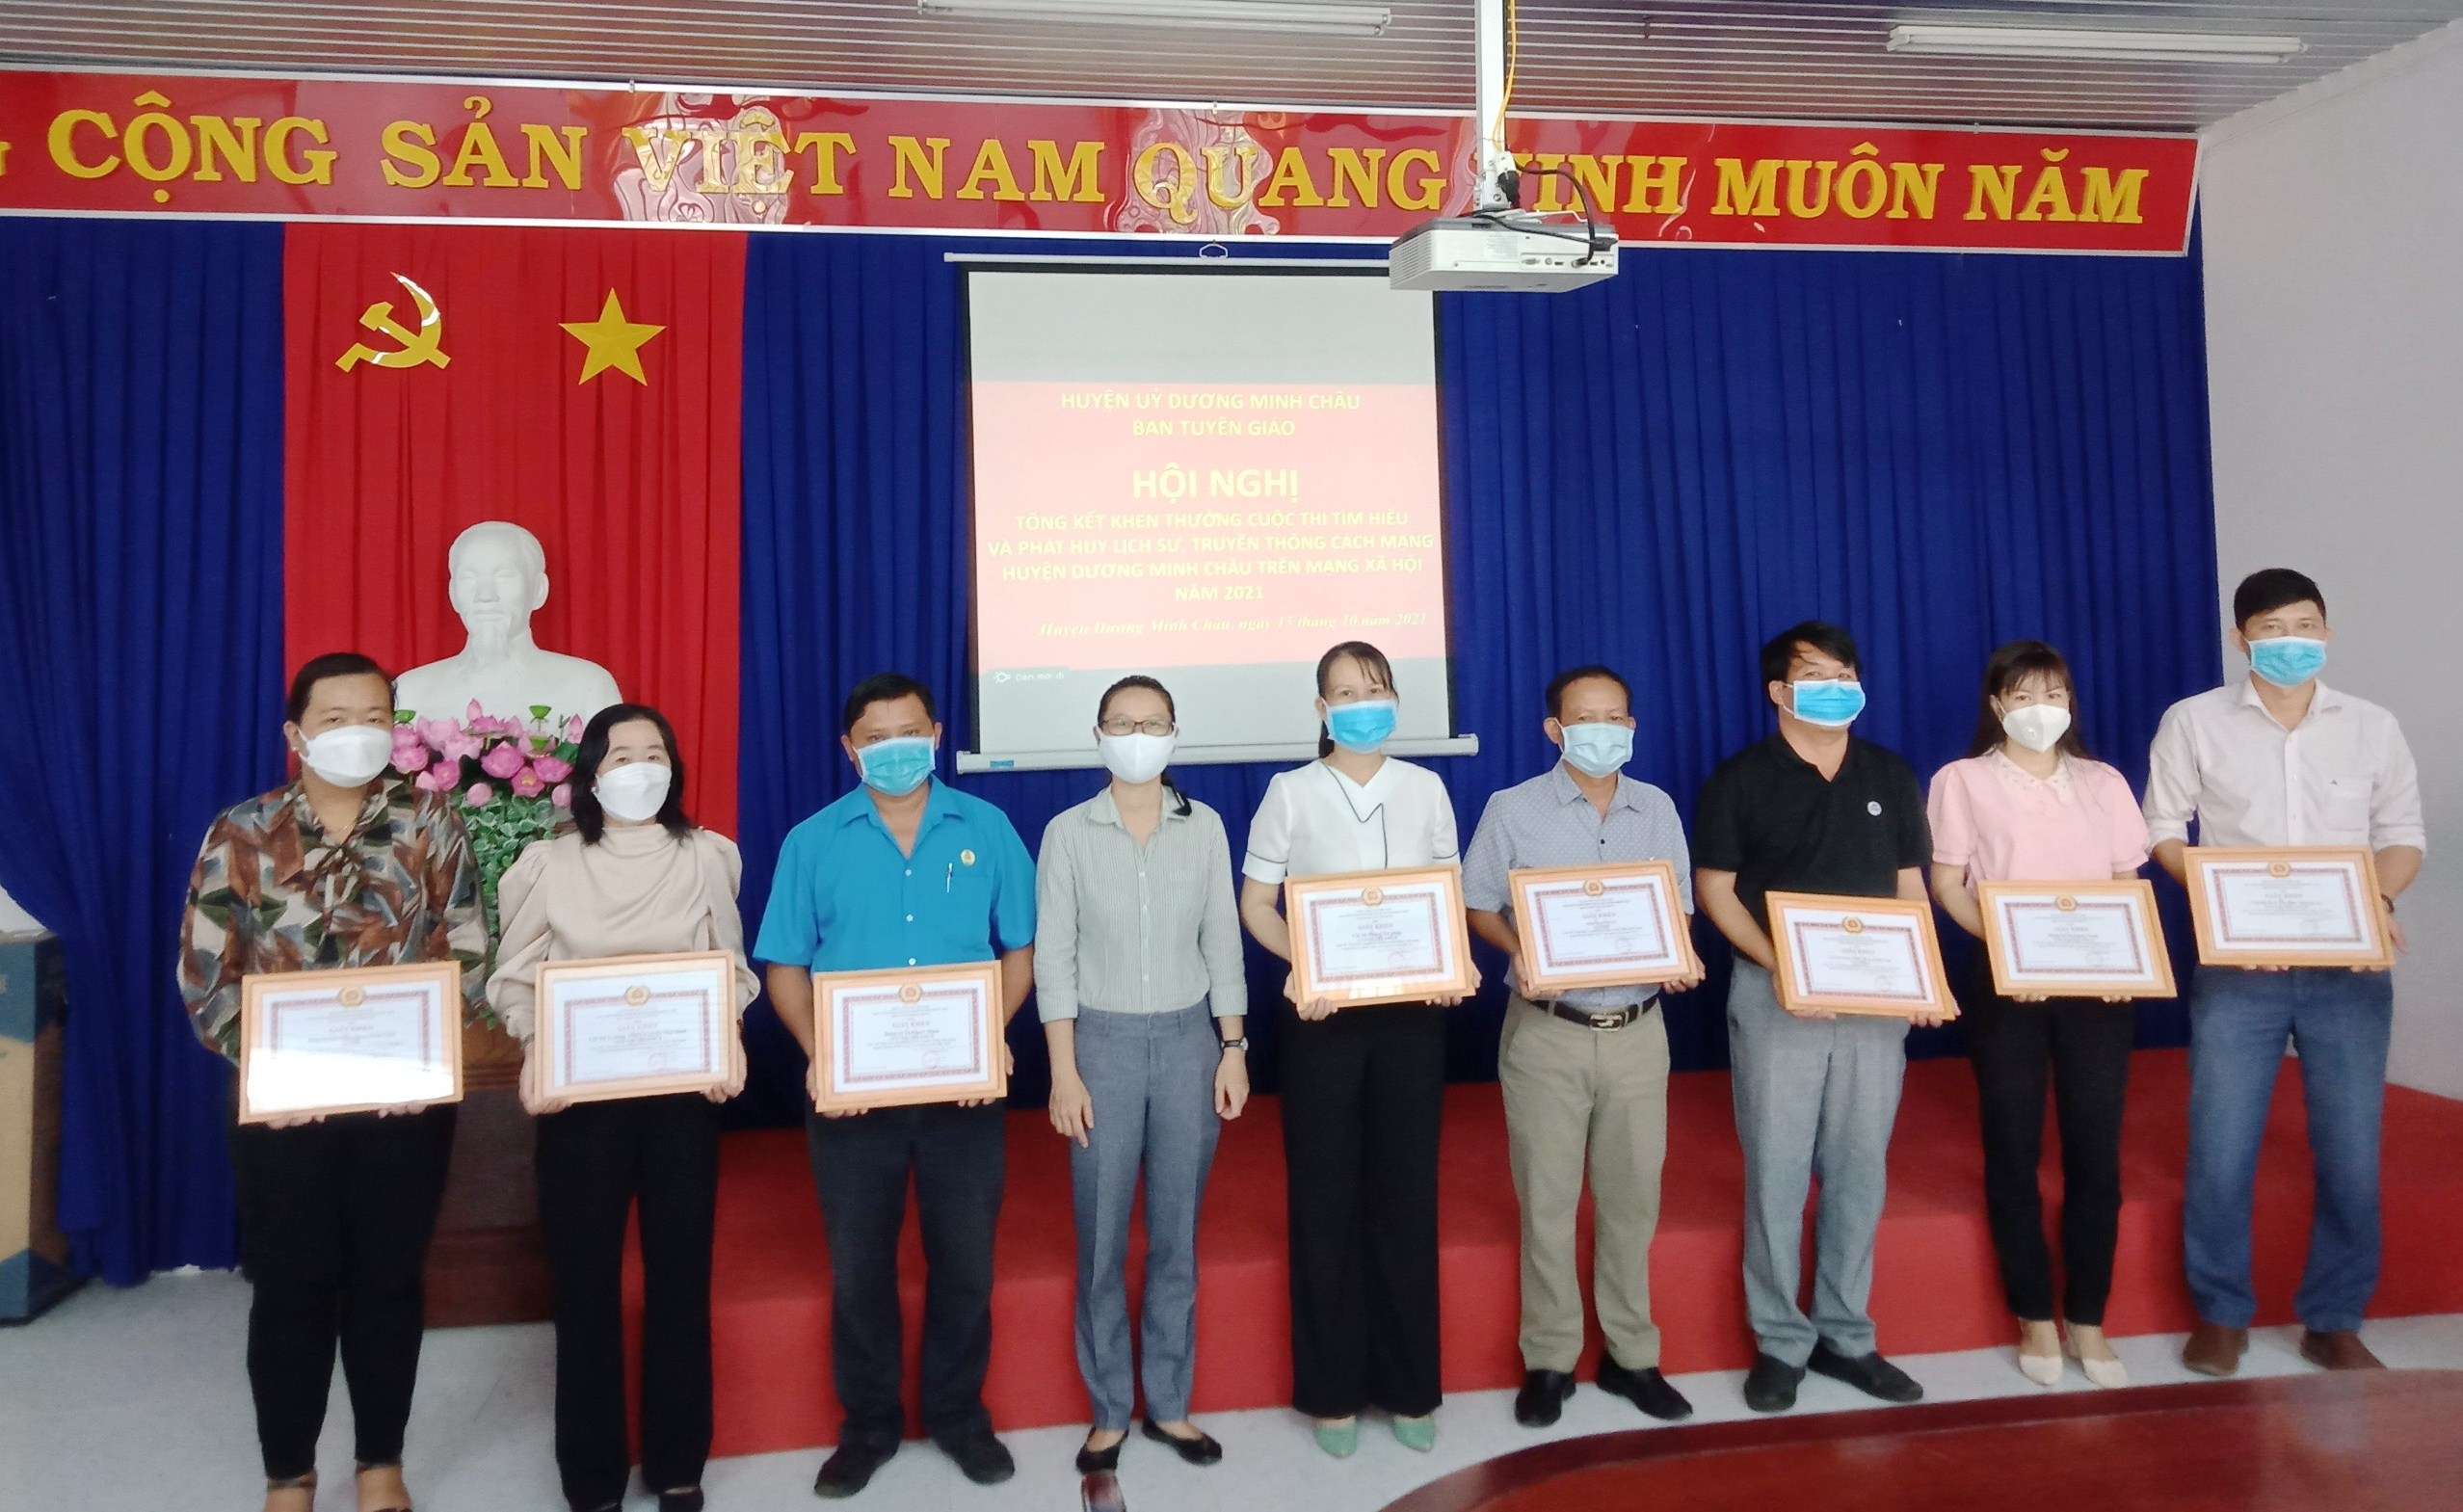 Huyện ủy Dương Minh Châu:  Tổng kết cuộc thi “Tìm hiểu và phát huy lịch sử, truyền thống cách mạng huyện Dương Minh Châu”